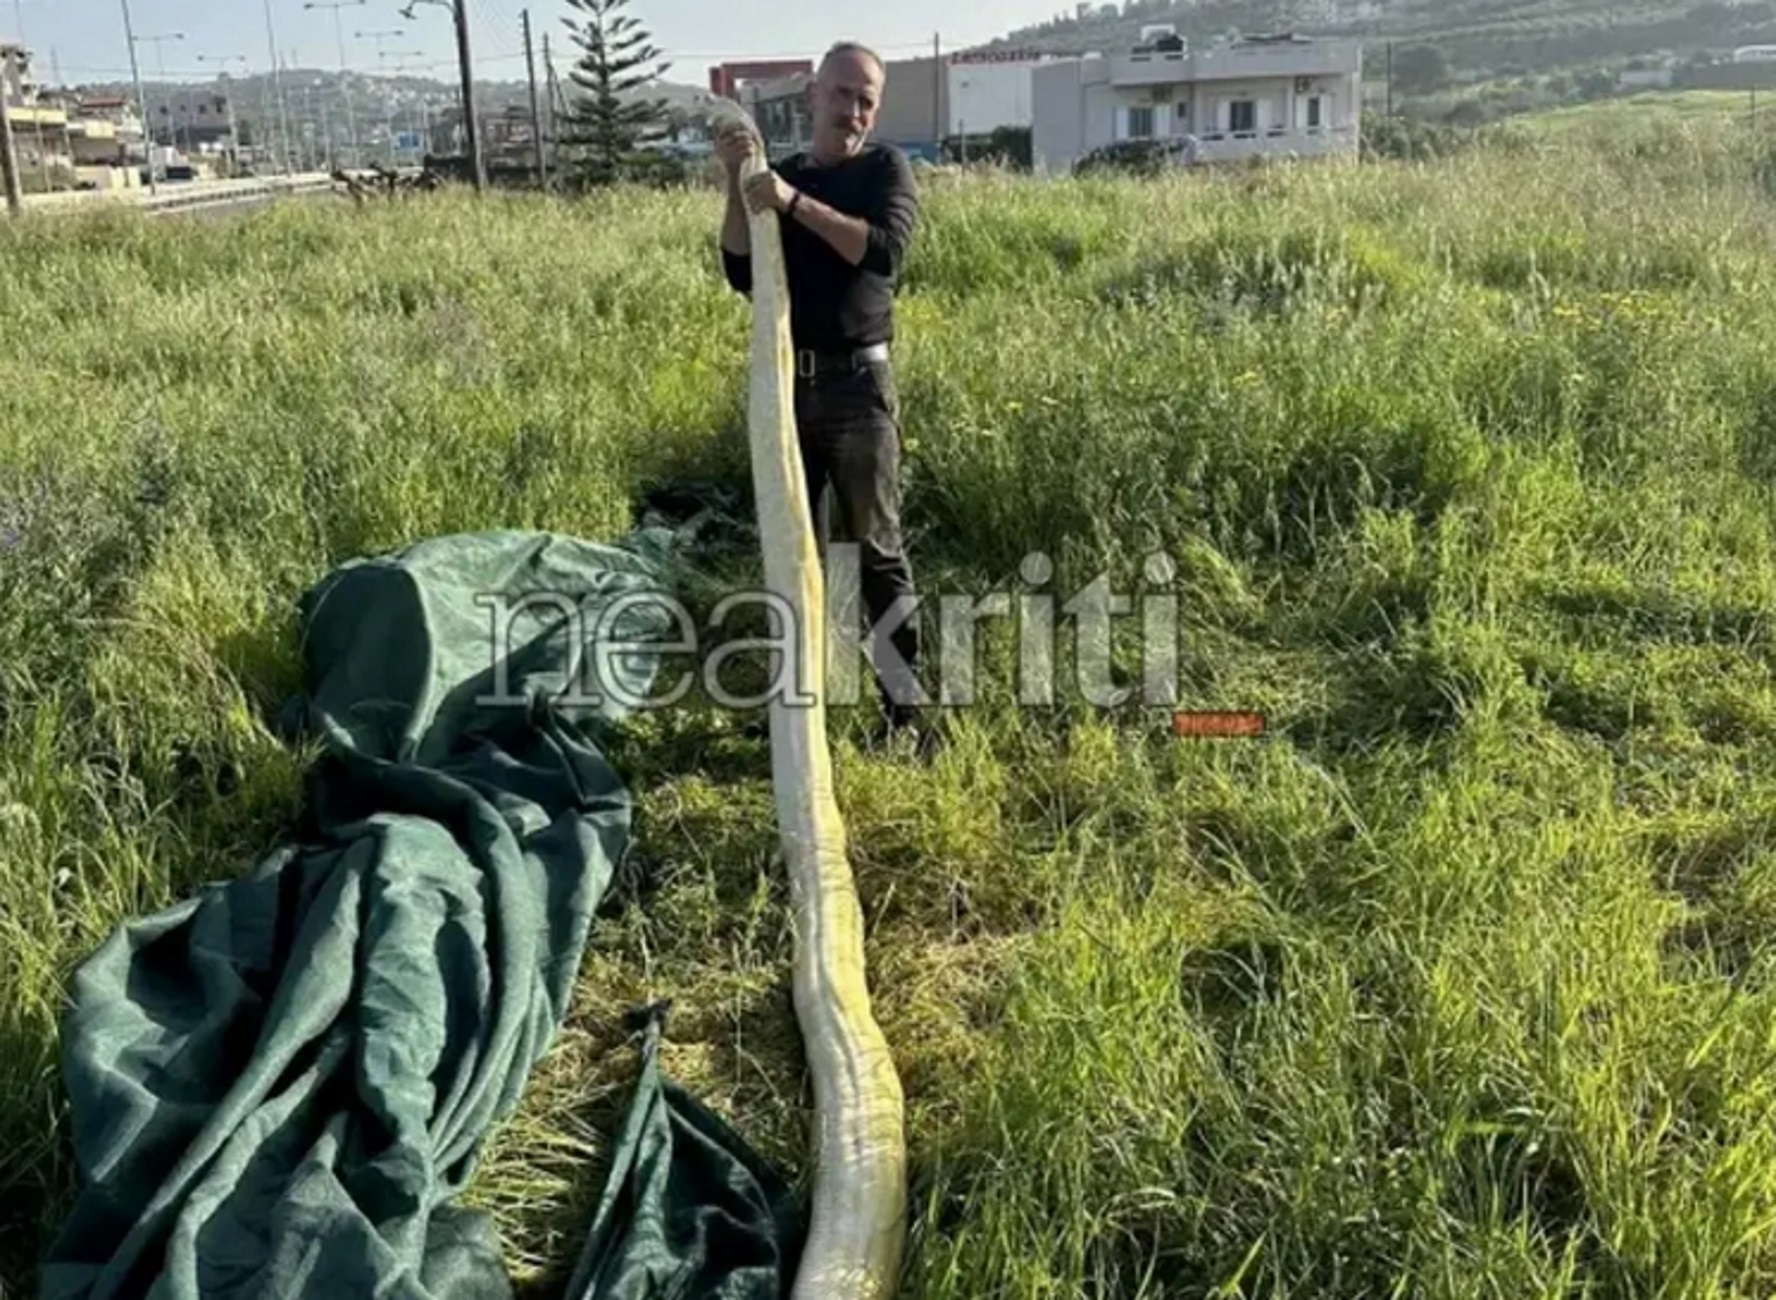 Ηράκλειο: Πύθωνας 5 μέτρων σε χωράφι, viral οι εικόνες με το φίδι